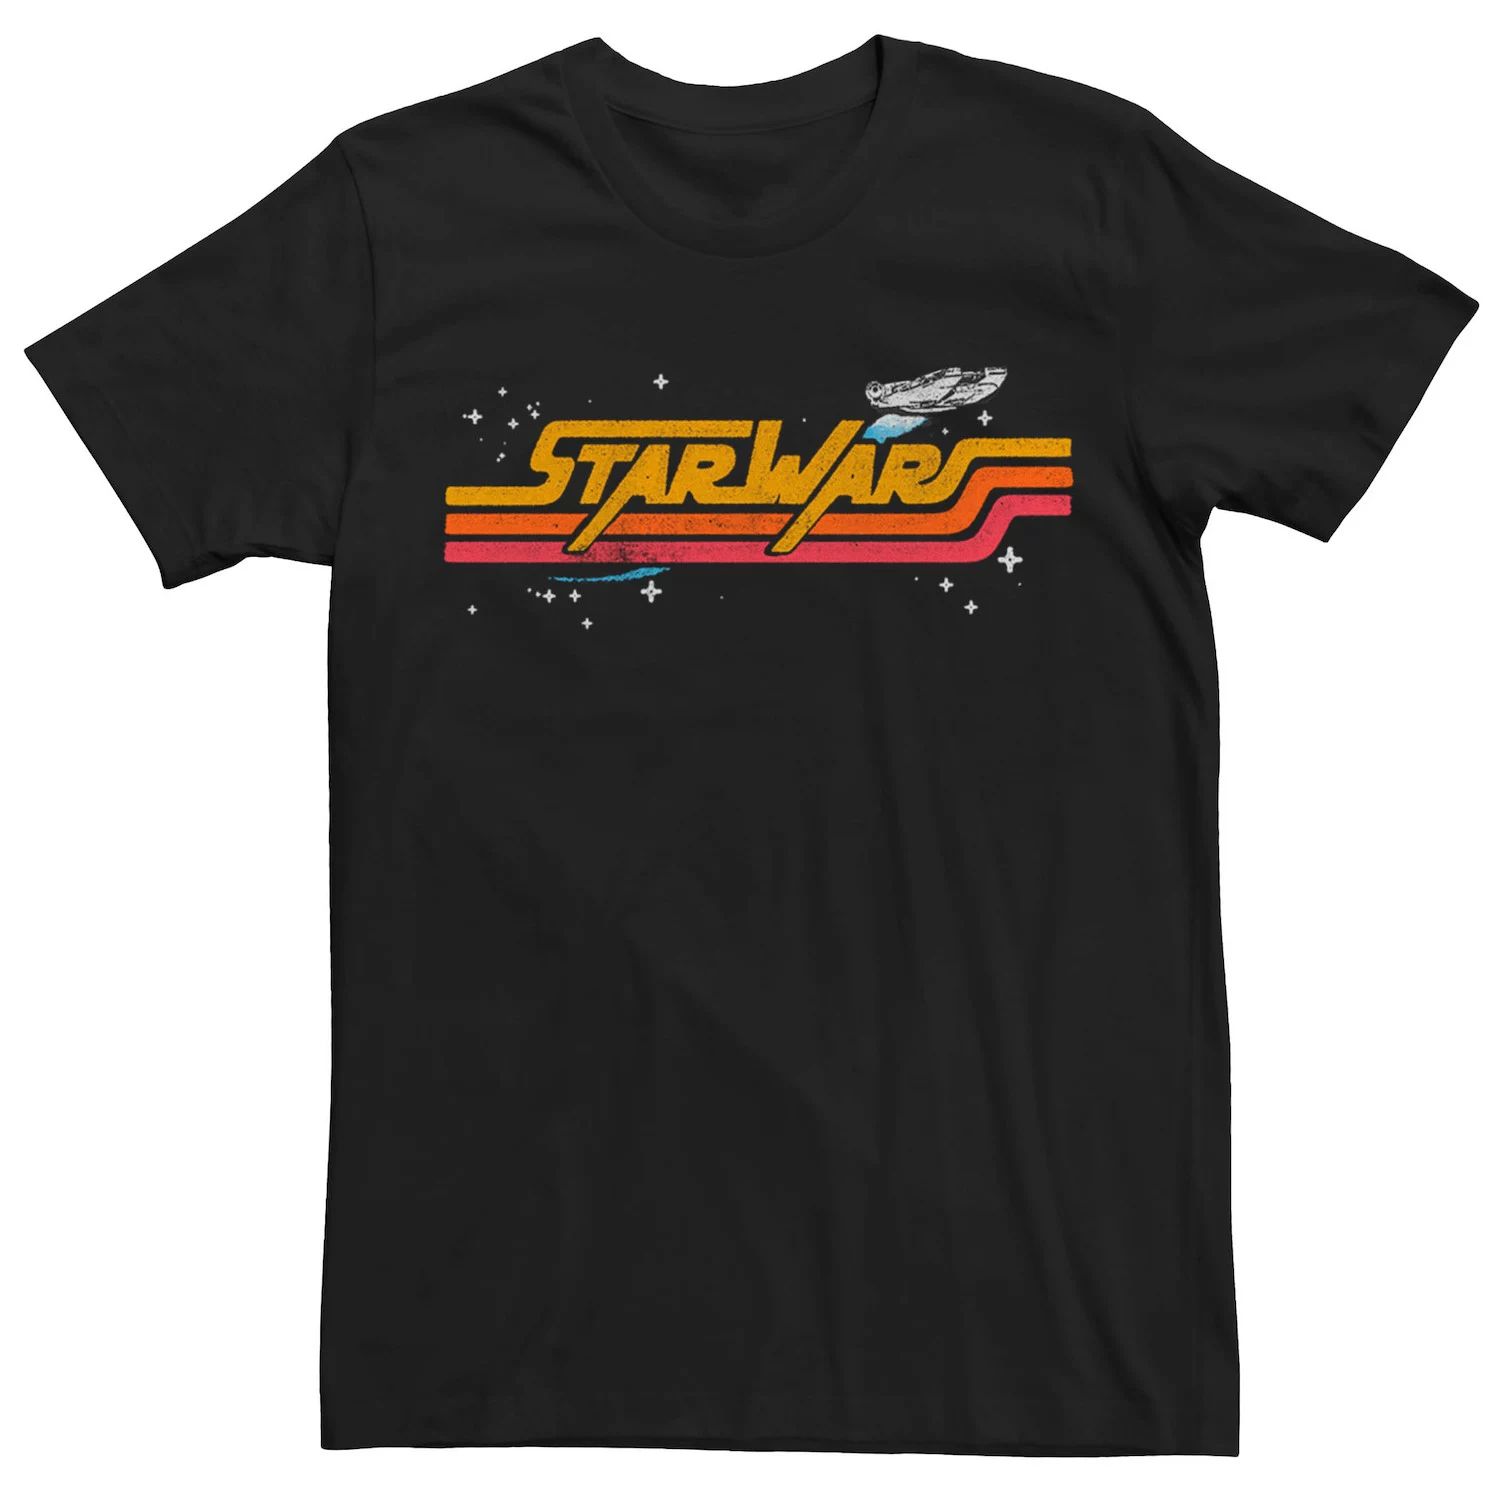 Мужская футболка с логотипом в стиле ретро «Звездные войны: Сокол тысячелетия» Star Wars, черный мужская футболка с логотипом комиксов звездные войны сокол тысячелетия star wars